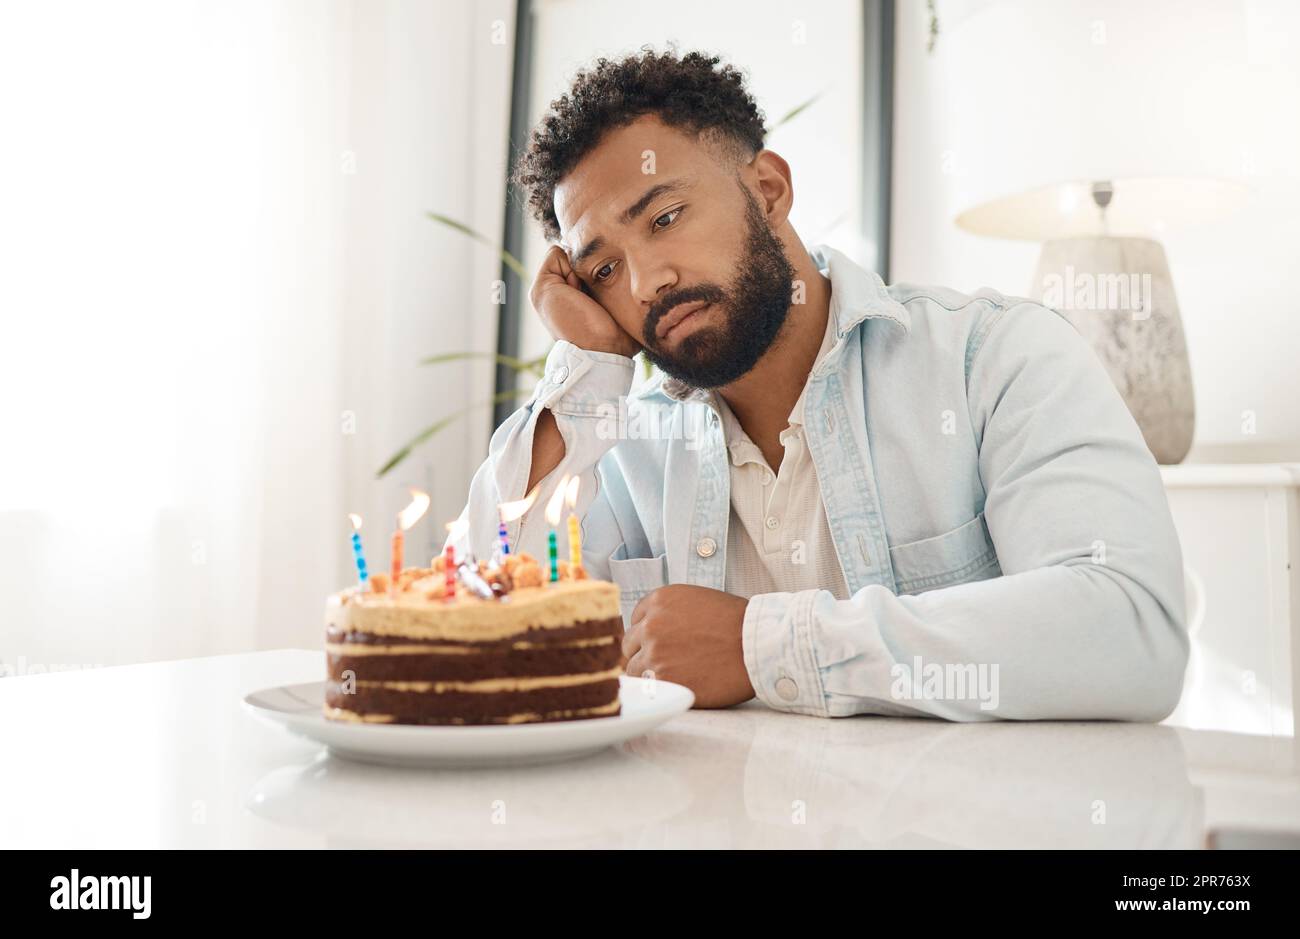 Wenn niemand zu deinem Geburtstag aufkommt. Aufnahme eines jungen Mannes, der zu Hause seinen Geburtstag allein feiert. Stockfoto